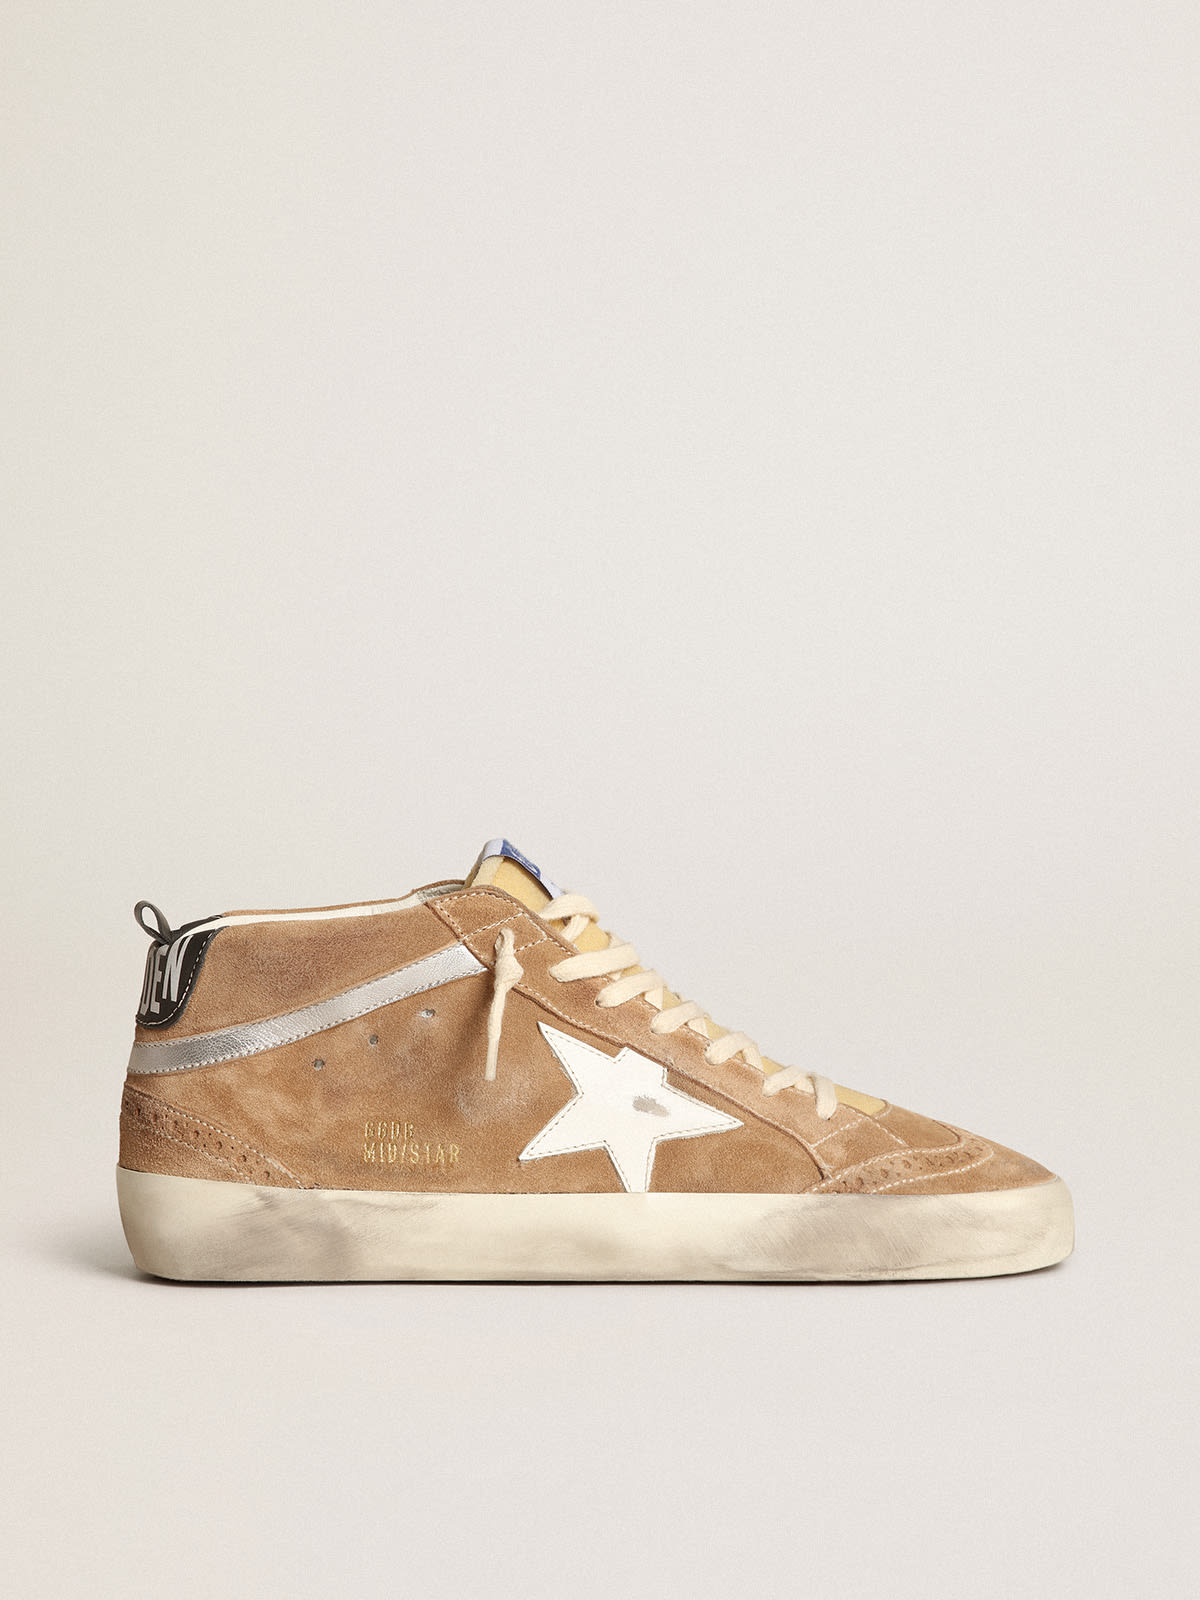 Golden Goose - Sneakers Mid Star en daim couleur tabac avec étoile en cuir blanc et virgule en cuir lamé argenté in 